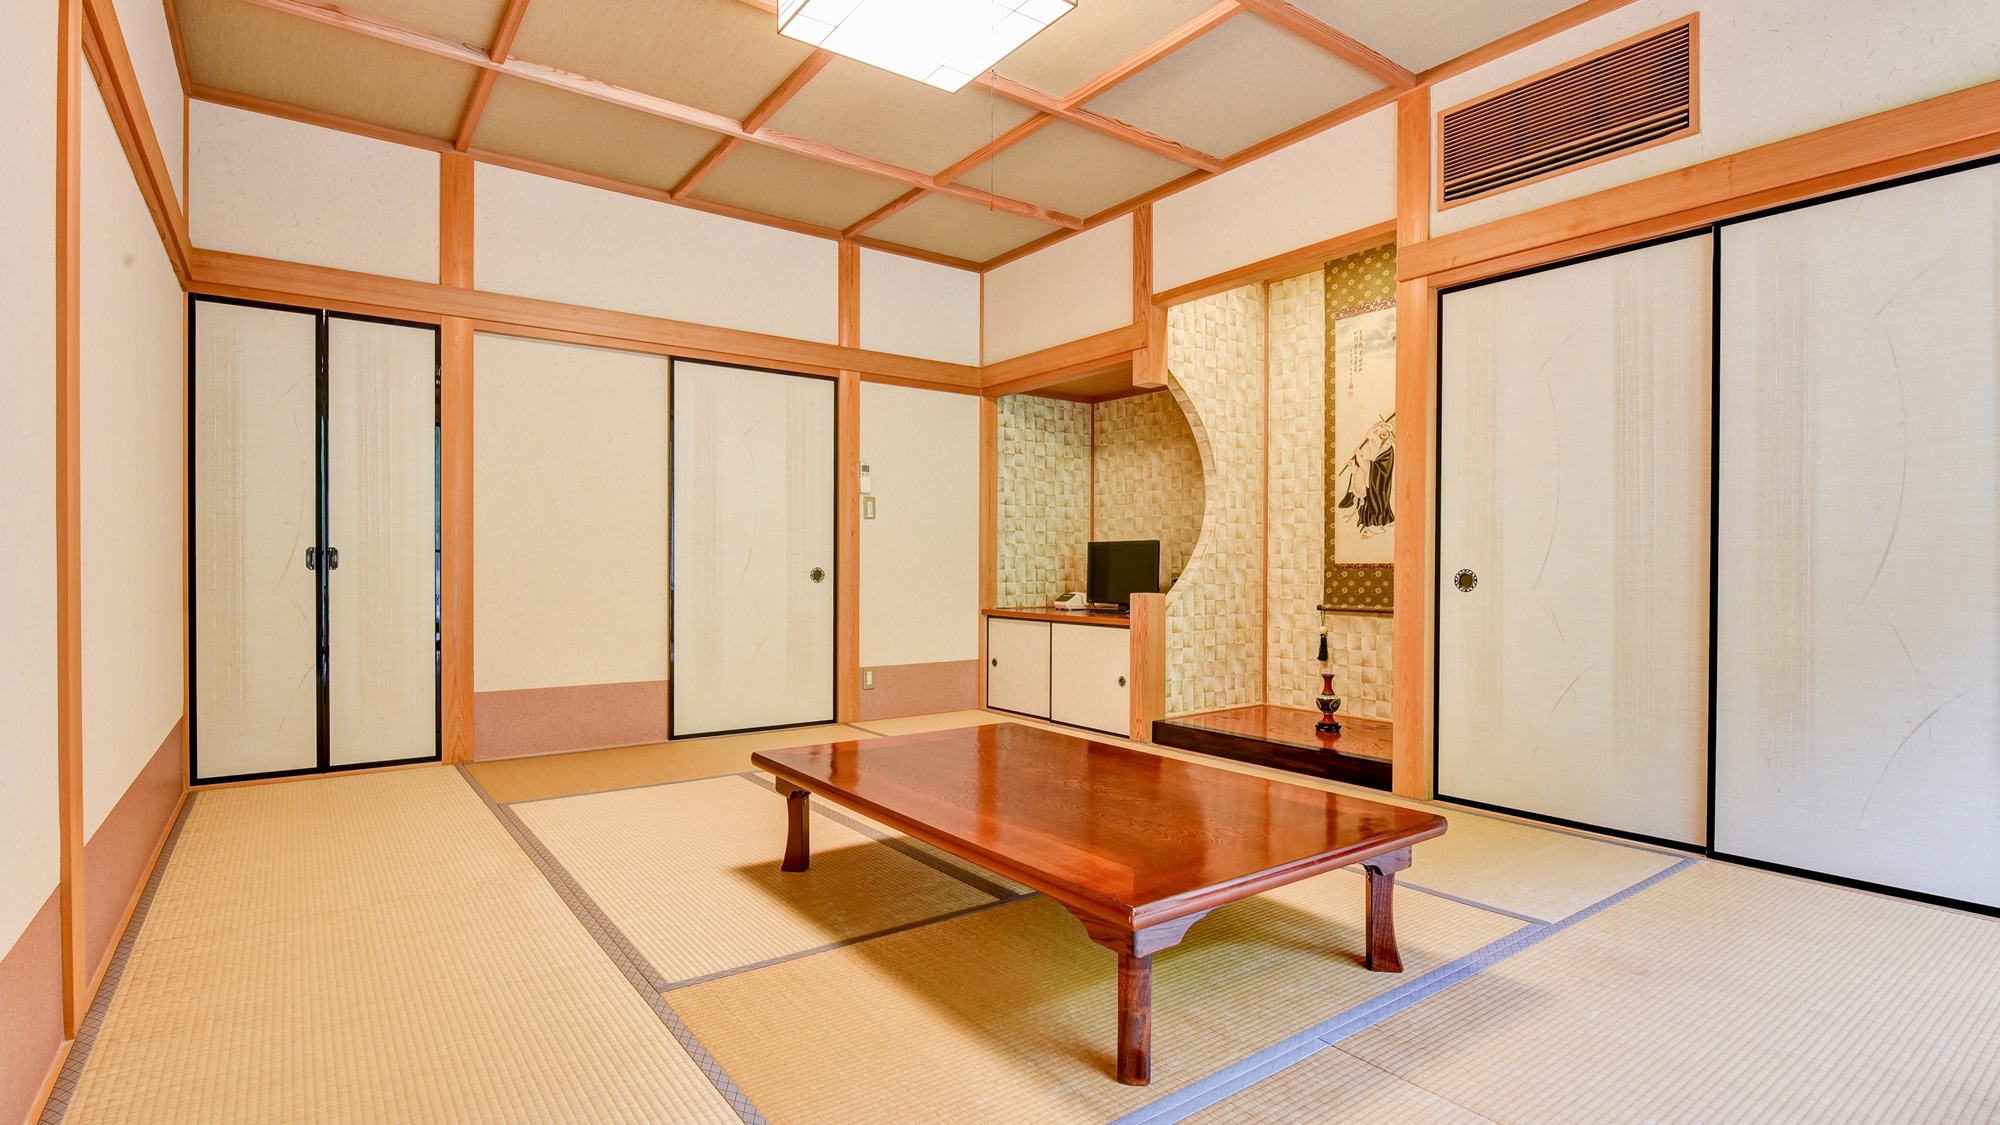 * ■ ห้องสไตล์ญี่ปุ่น 10 เสื่อทาทามิ (ตัวอย่าง) ■ กรุณายืดขาและผ่อนคลายอย่างช้าๆ ♪